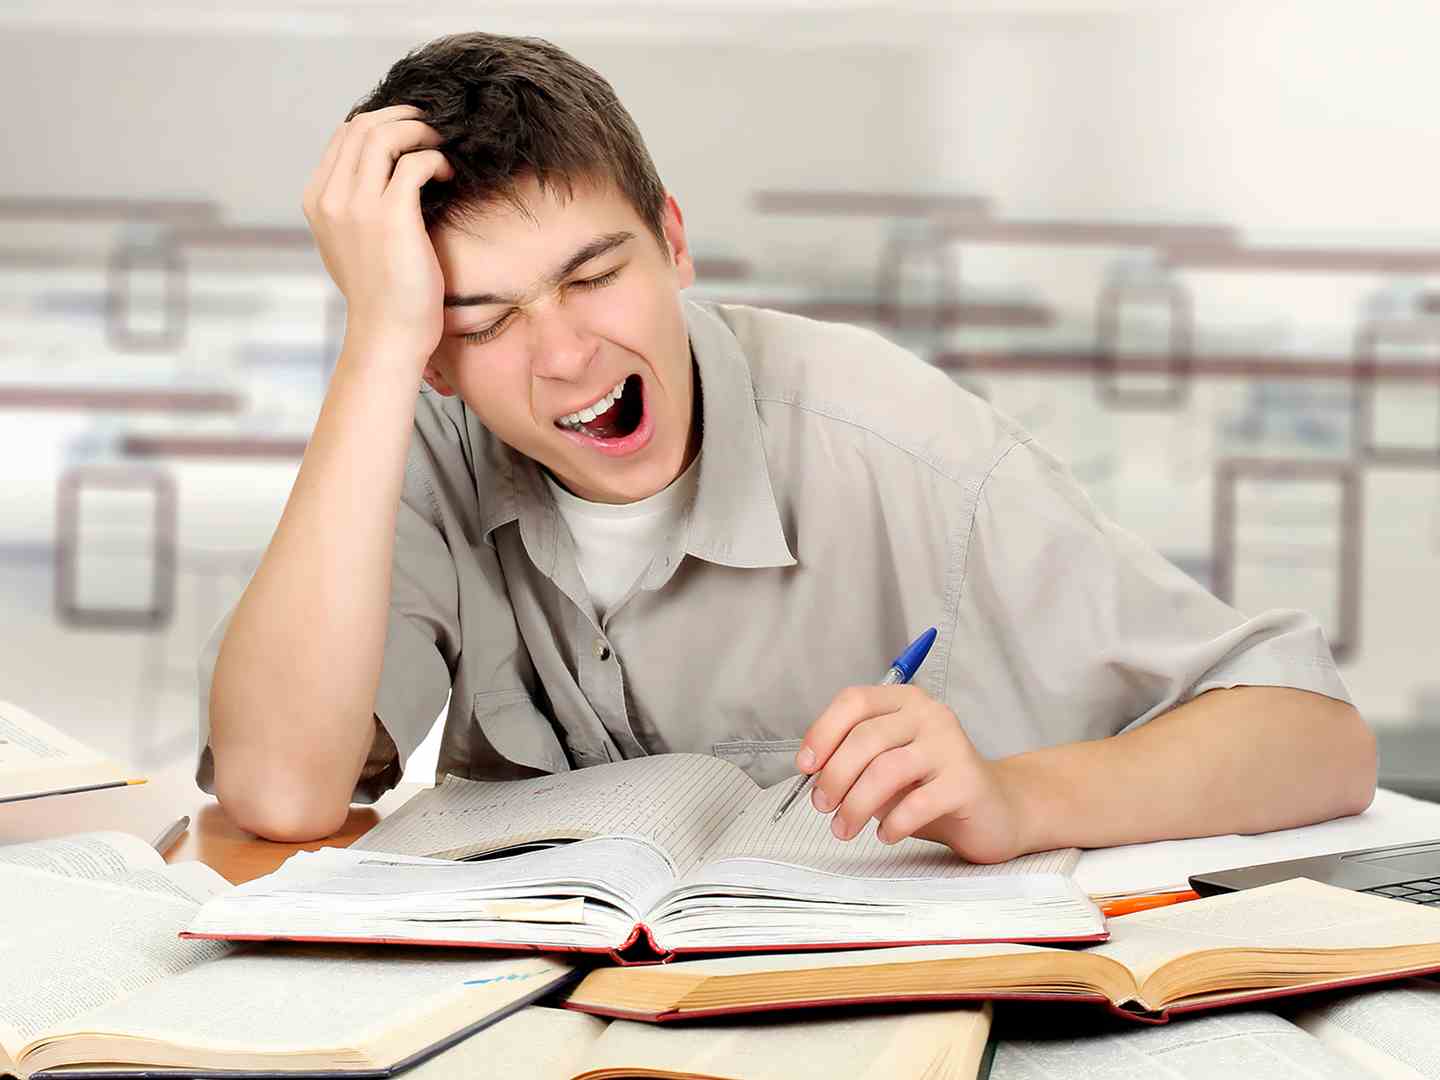 Постоянная скука. Студент зевает. Зевает на уроке. Усталый студент. Студент устал.